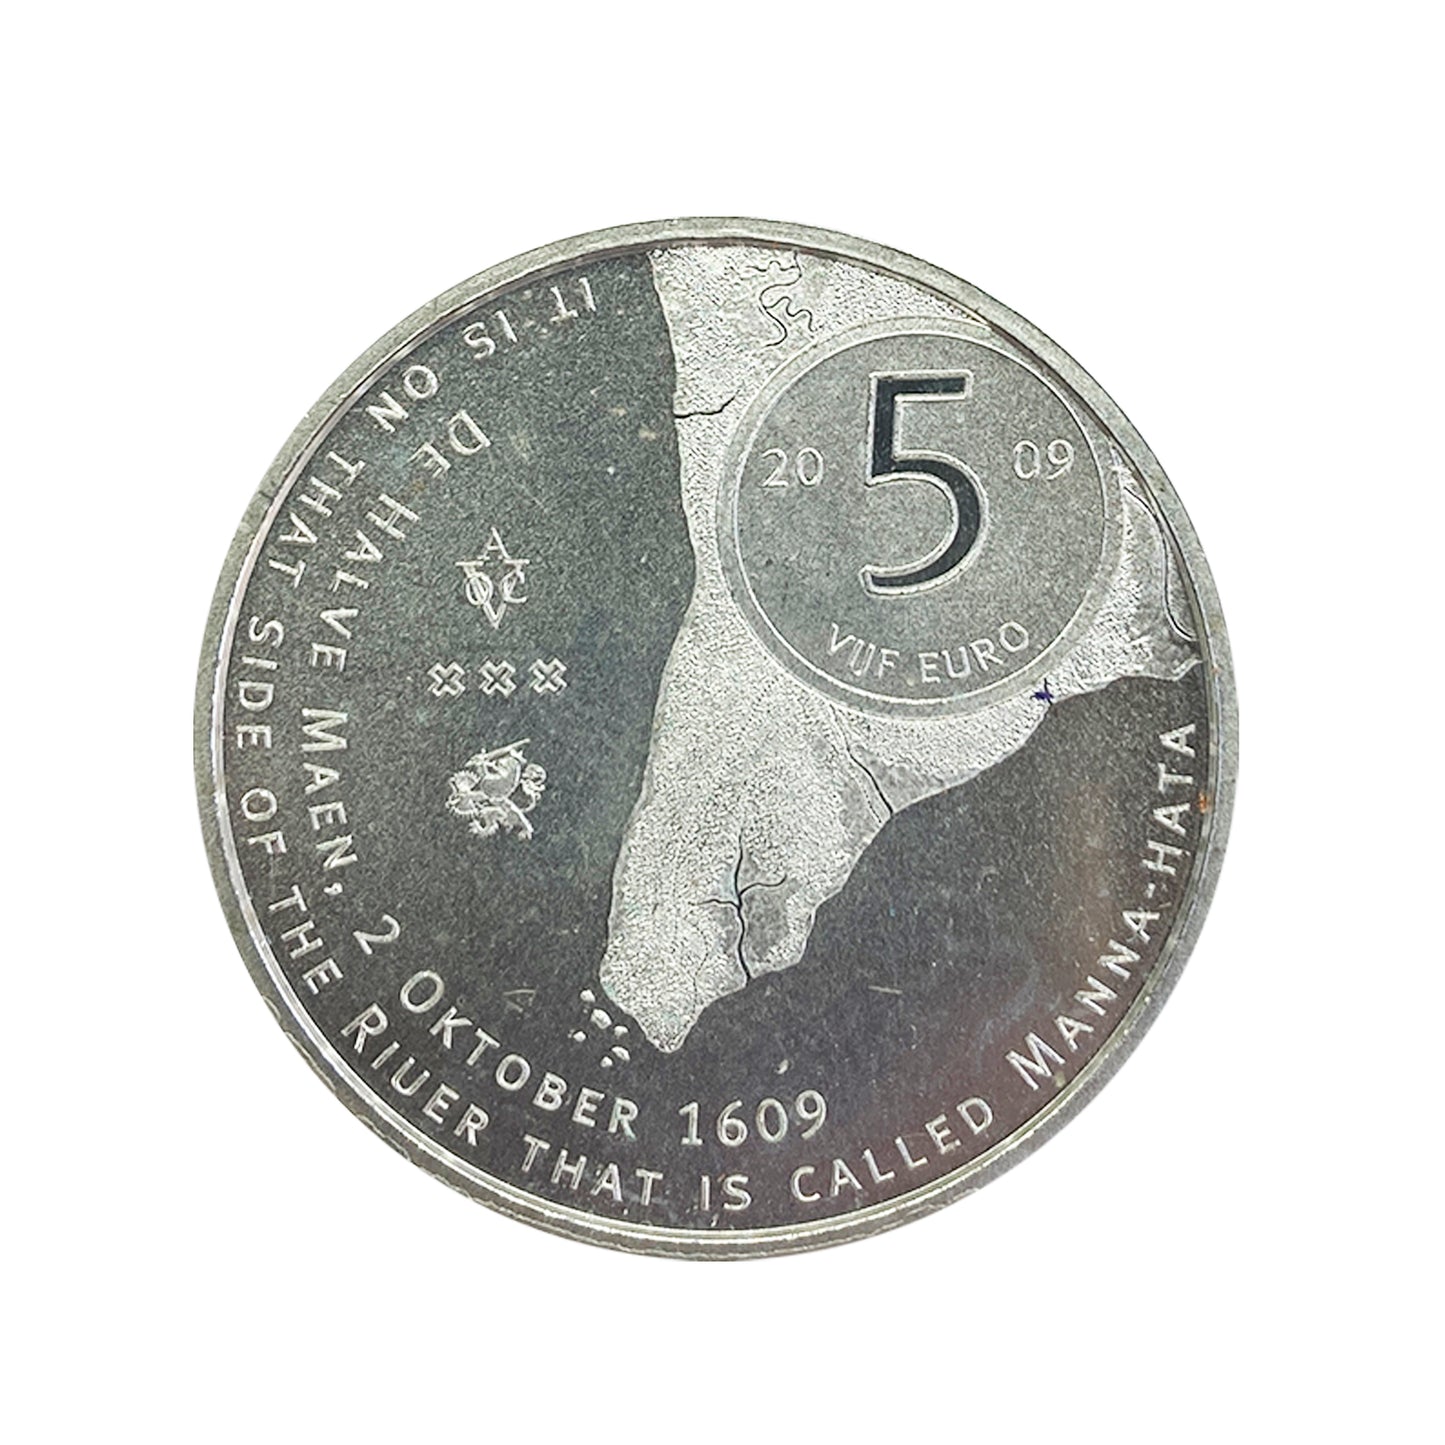 Países Bajos - Moneda 5 euros 2009 - 400 aniversario de Manhattan